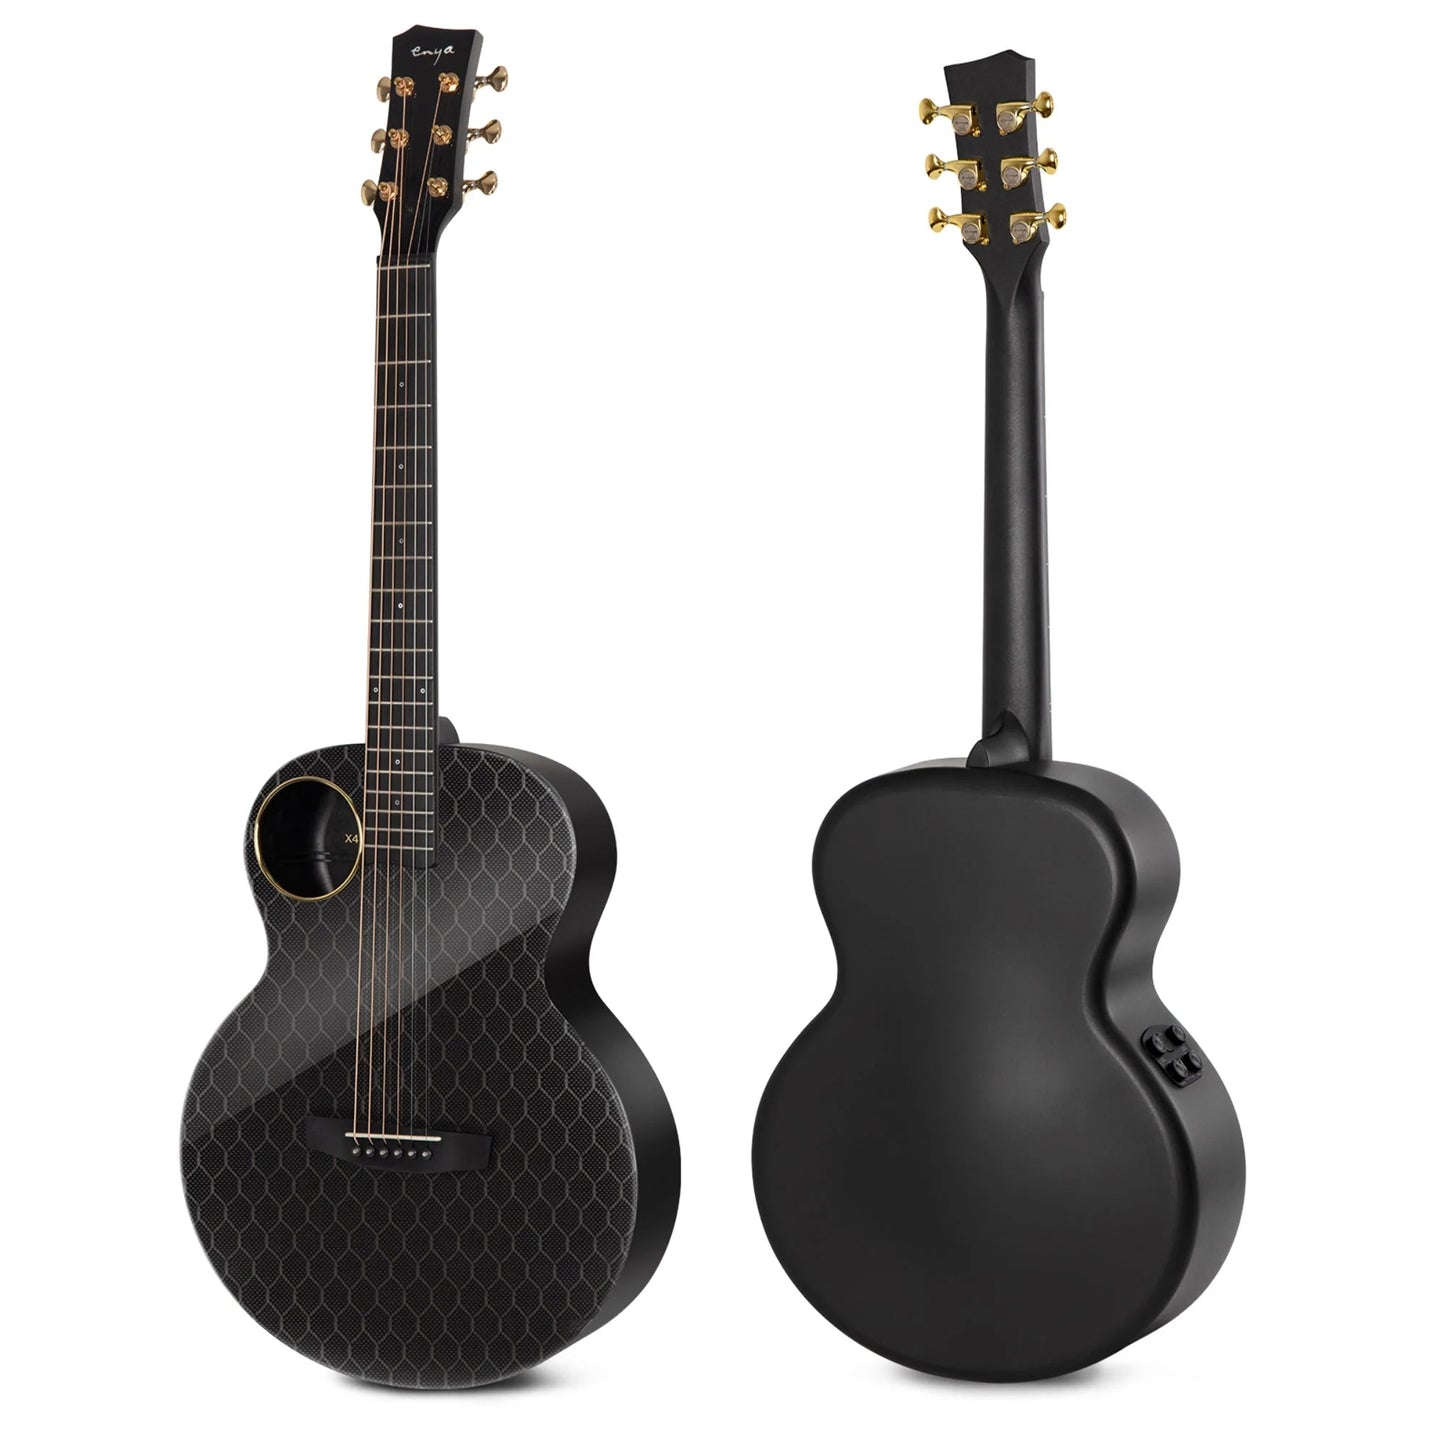 Đàn Guitar Enya X4 Pro Mini EQ AcousticPlus